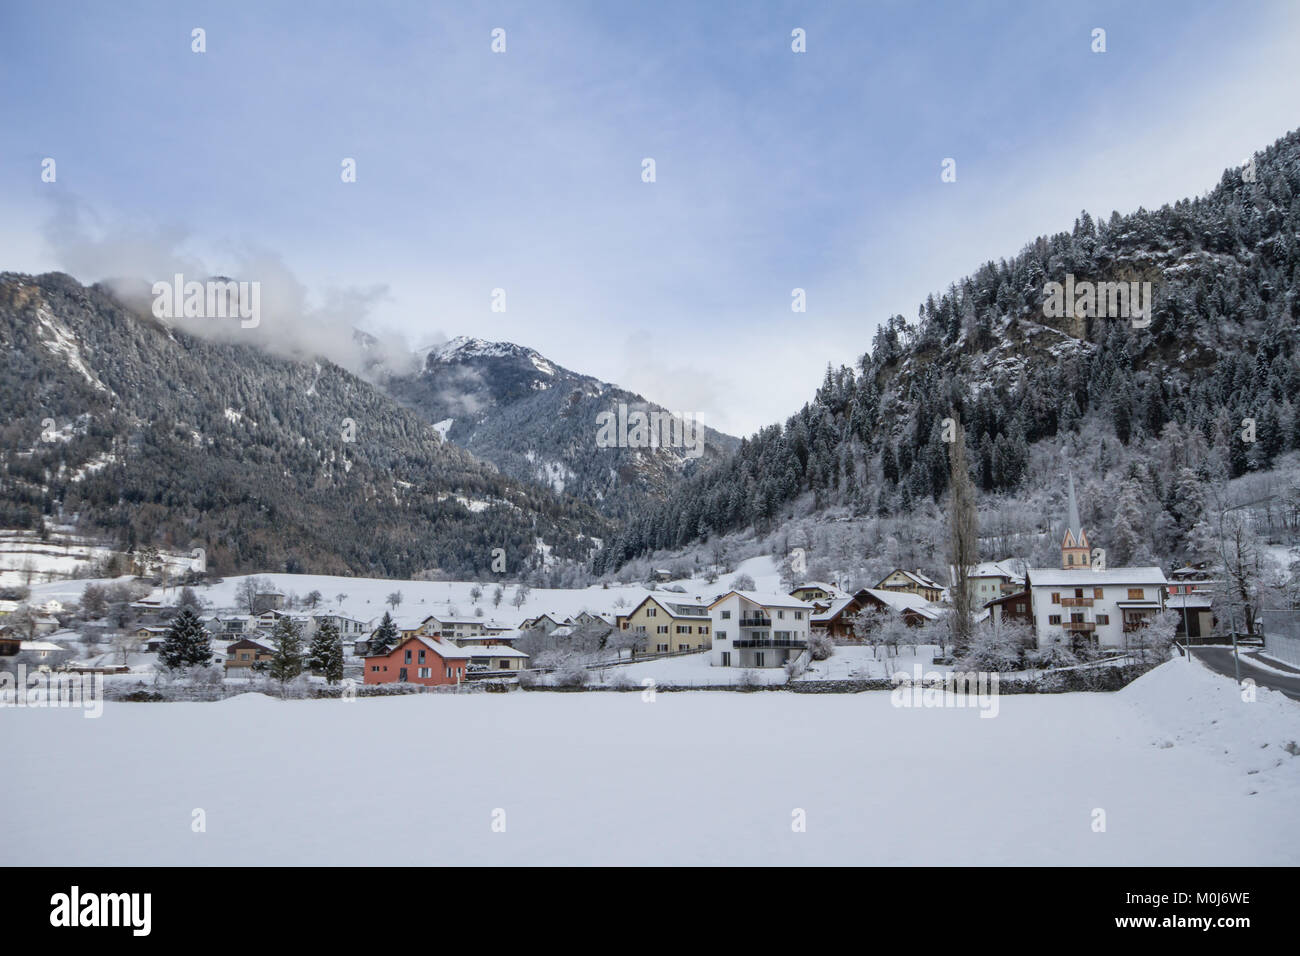 Village Sils im Domleschg, Canton of Grisons (Graubünden), Switzerland Stock Photo